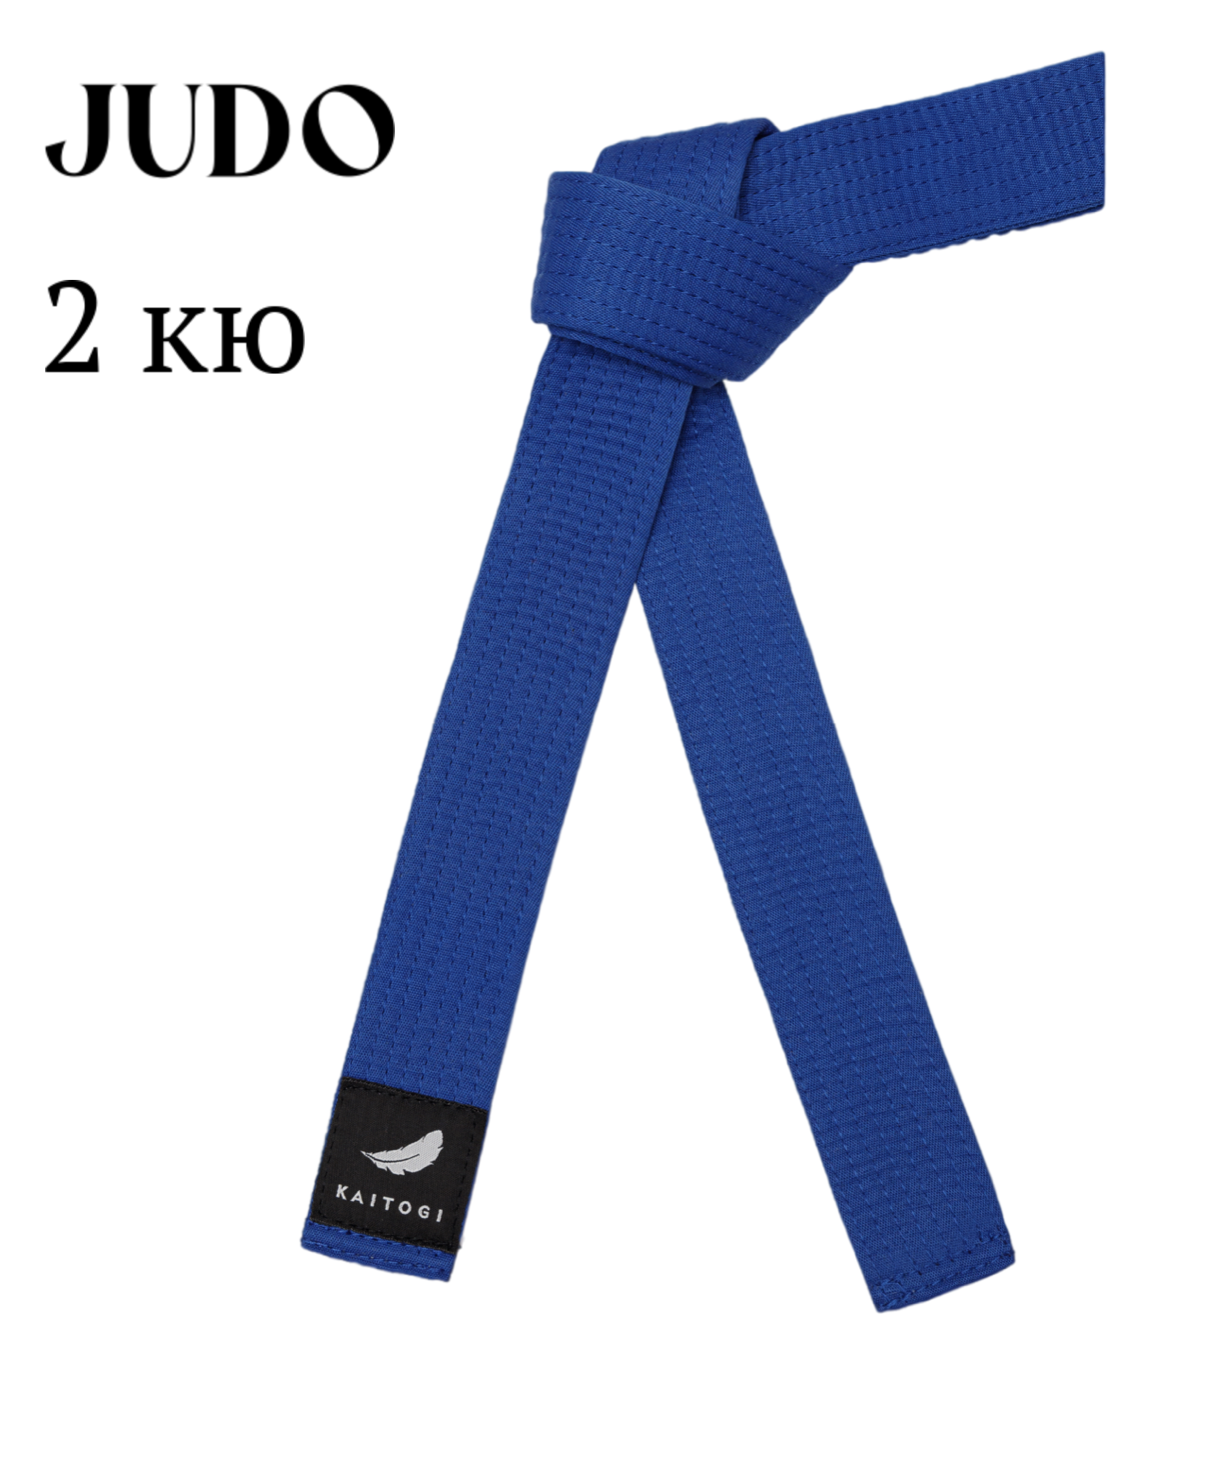 Пояс KAITOGI для дзюдо 2 кю синий 300 см